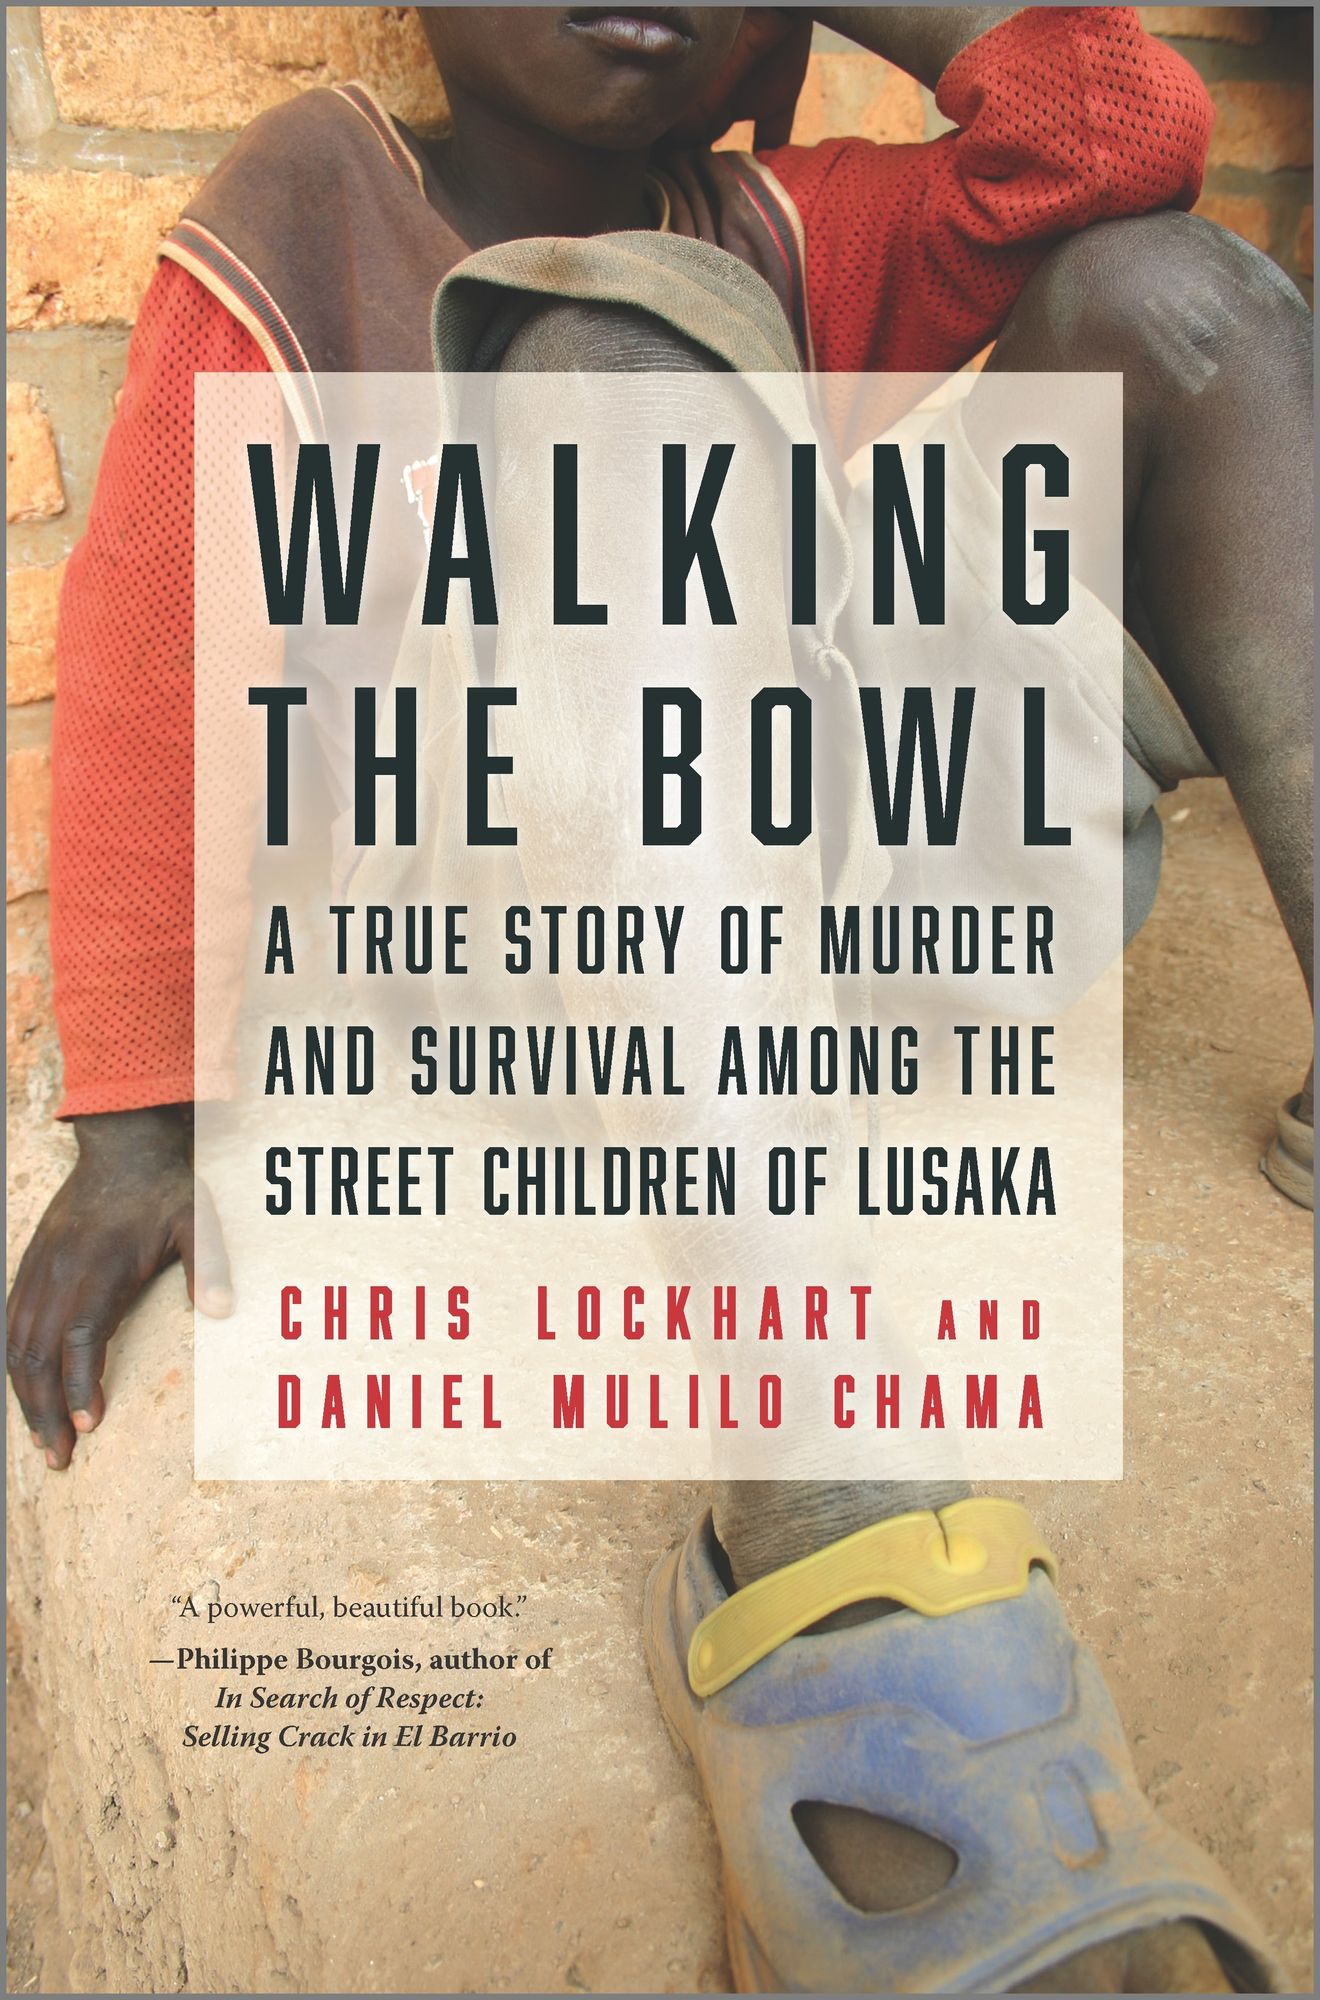 Walking the Bowl by Chris Lockhart & Daniel Mulilo Charma